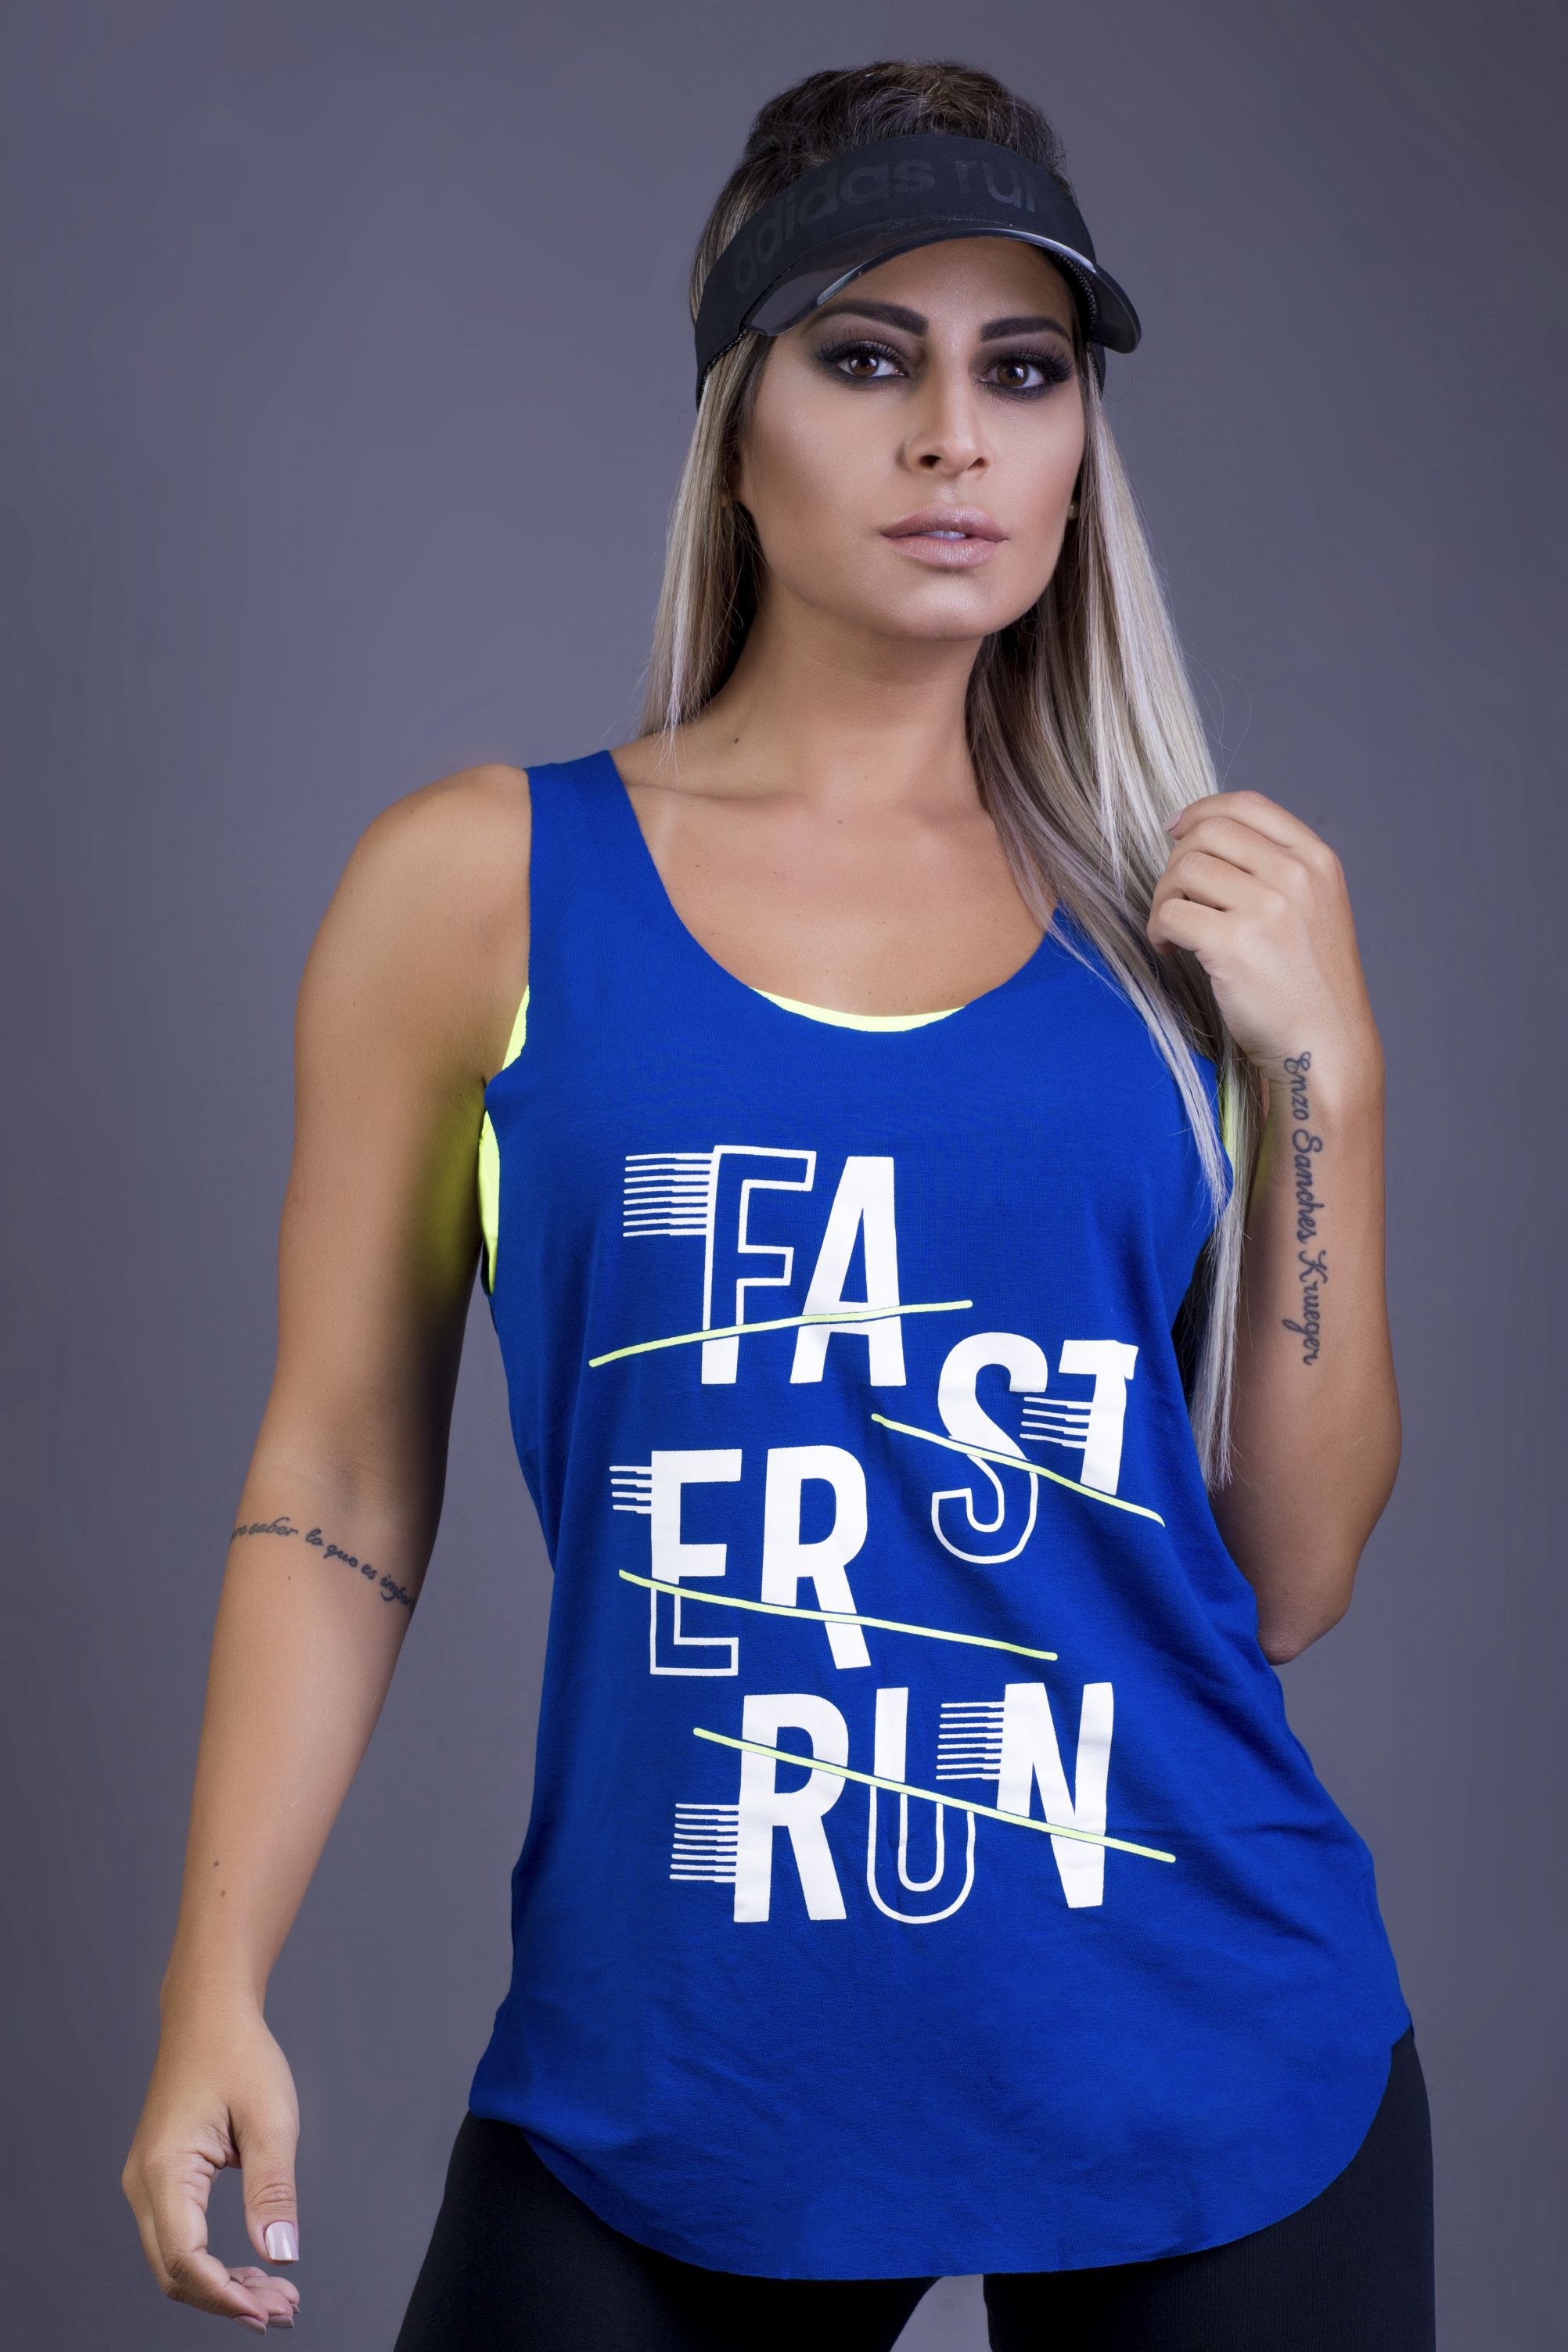 Regata Faster Run - Donna Carioca - Moda fitness com preço de fábrica